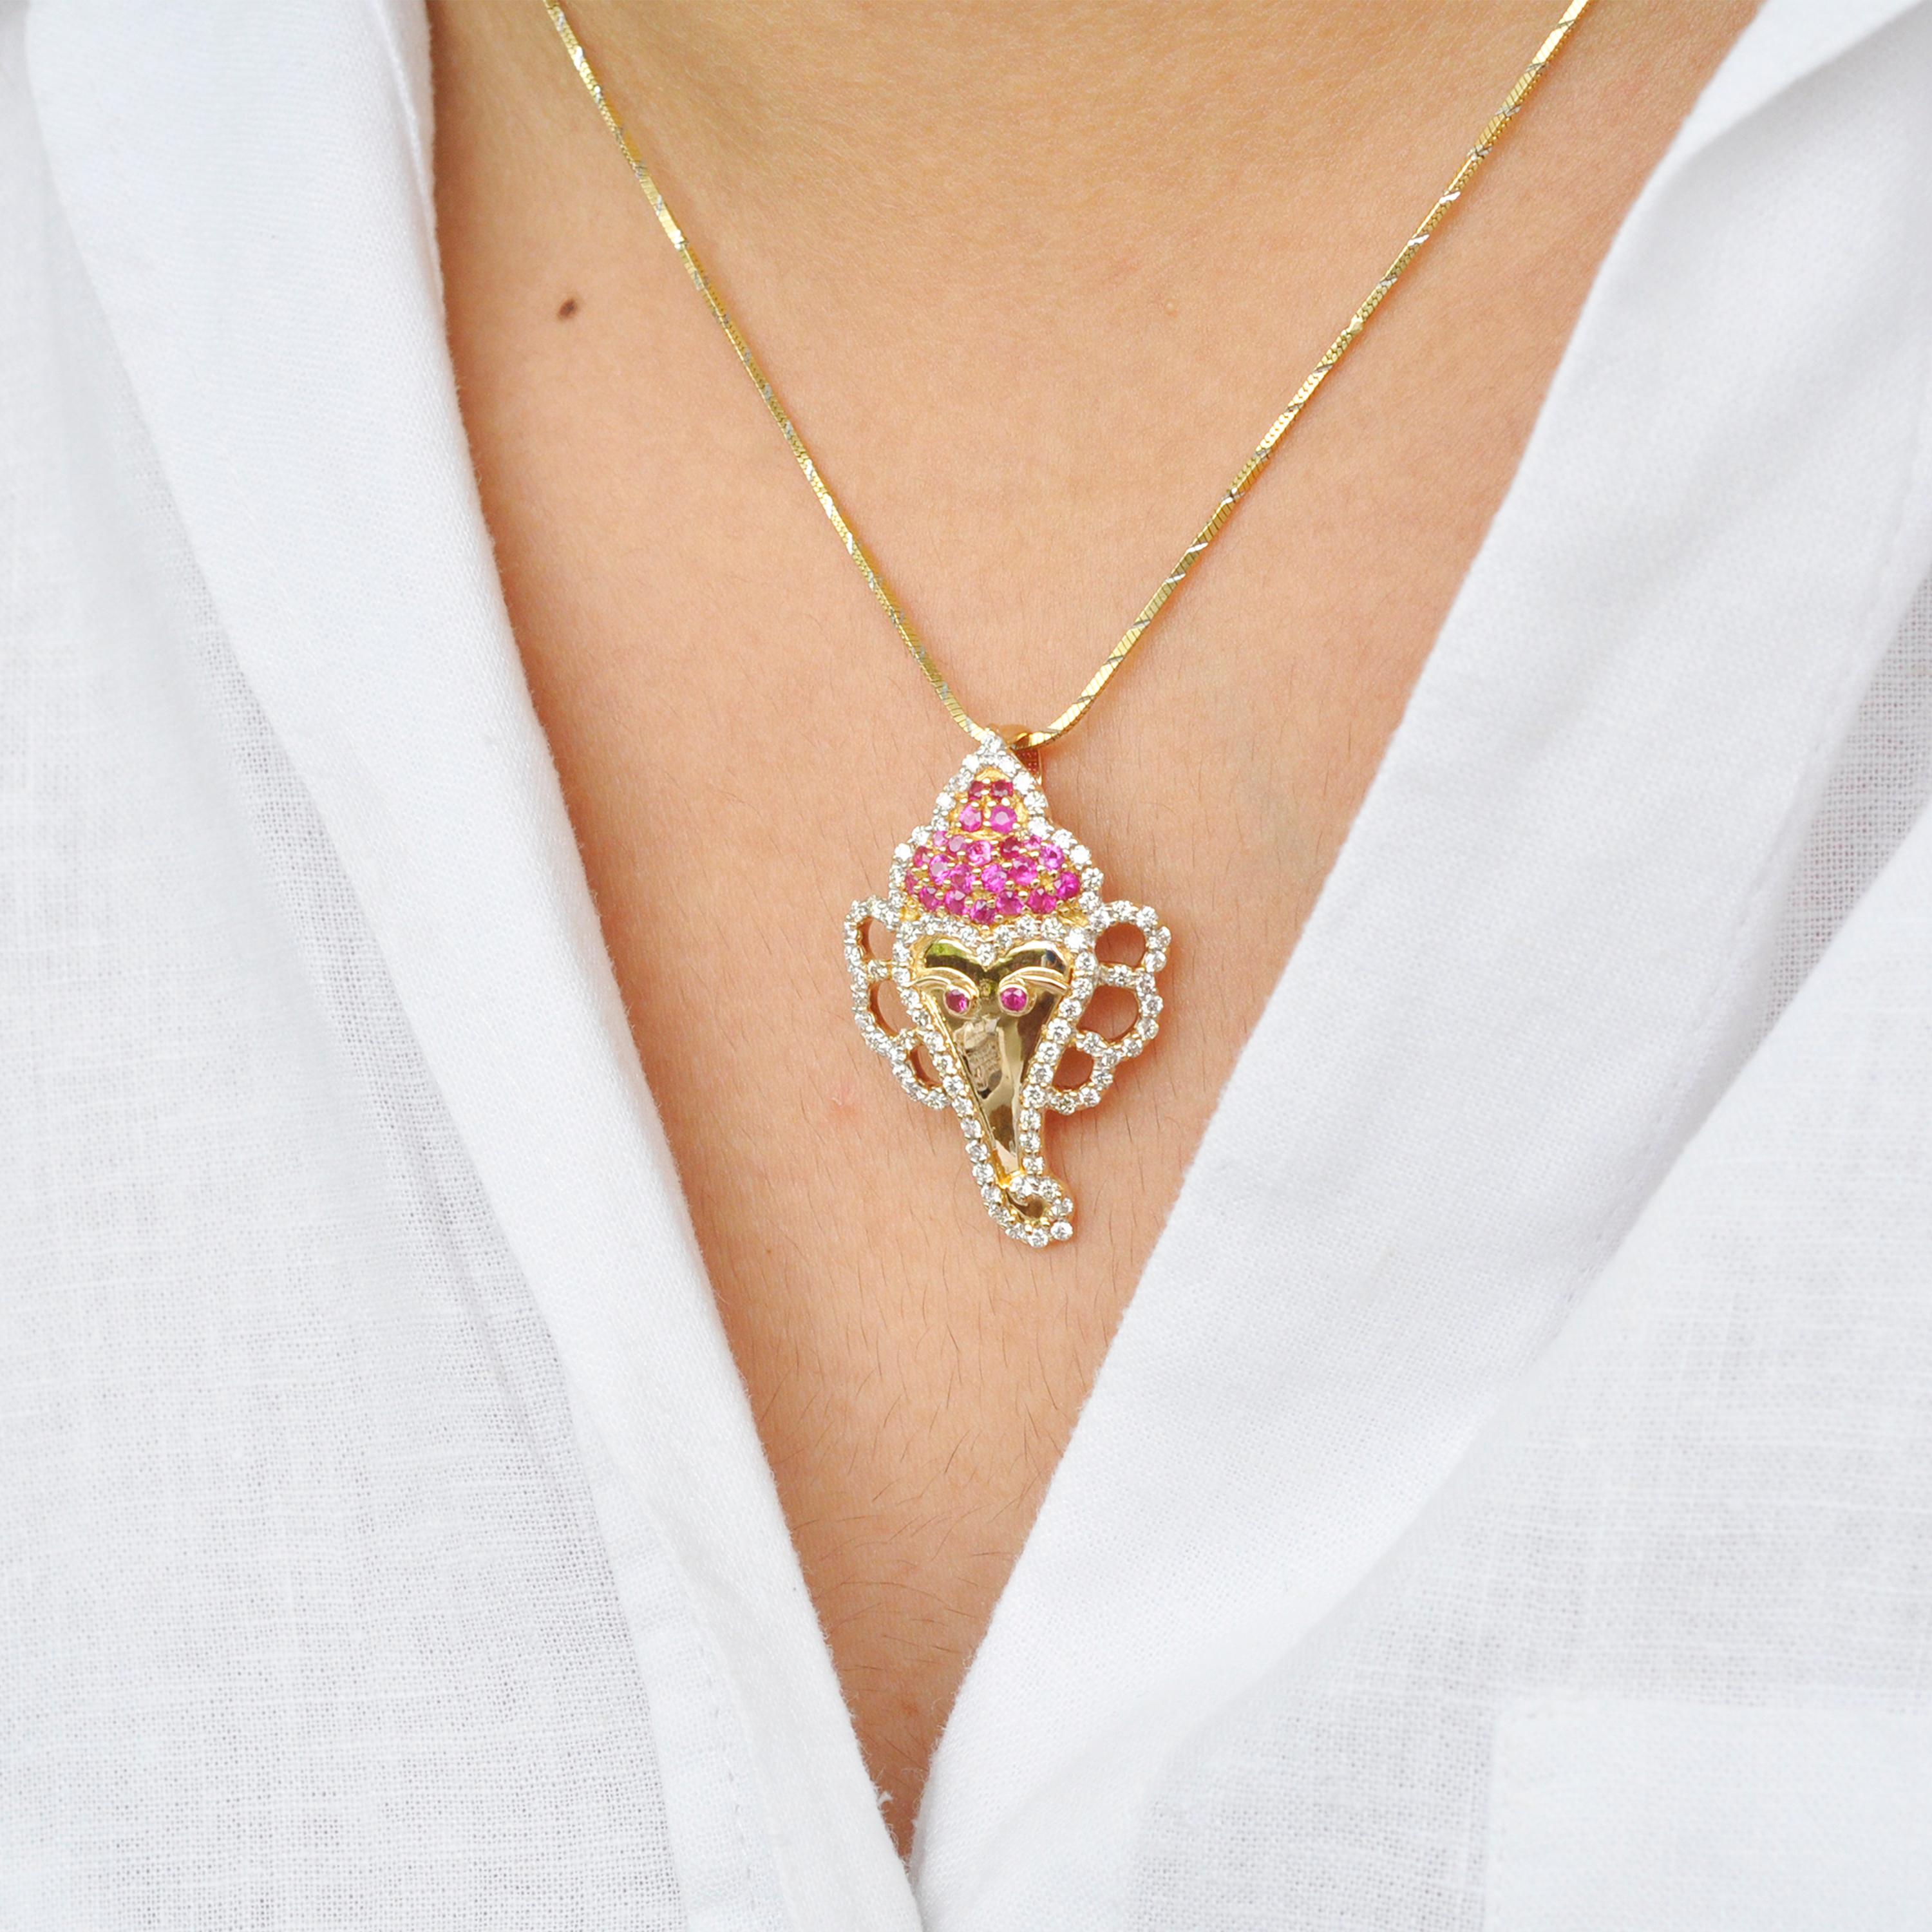 collier pendentif ganesha en or 18 carats, rubis rond et diamant.

Ce pendentif est inspiré du Seigneur Ganesha qui est l'annonciateur de la chance et de la bonne fortune en Inde. Le Seigneur Ganesha avait un visage d'éléphant, ainsi, serti en or 18